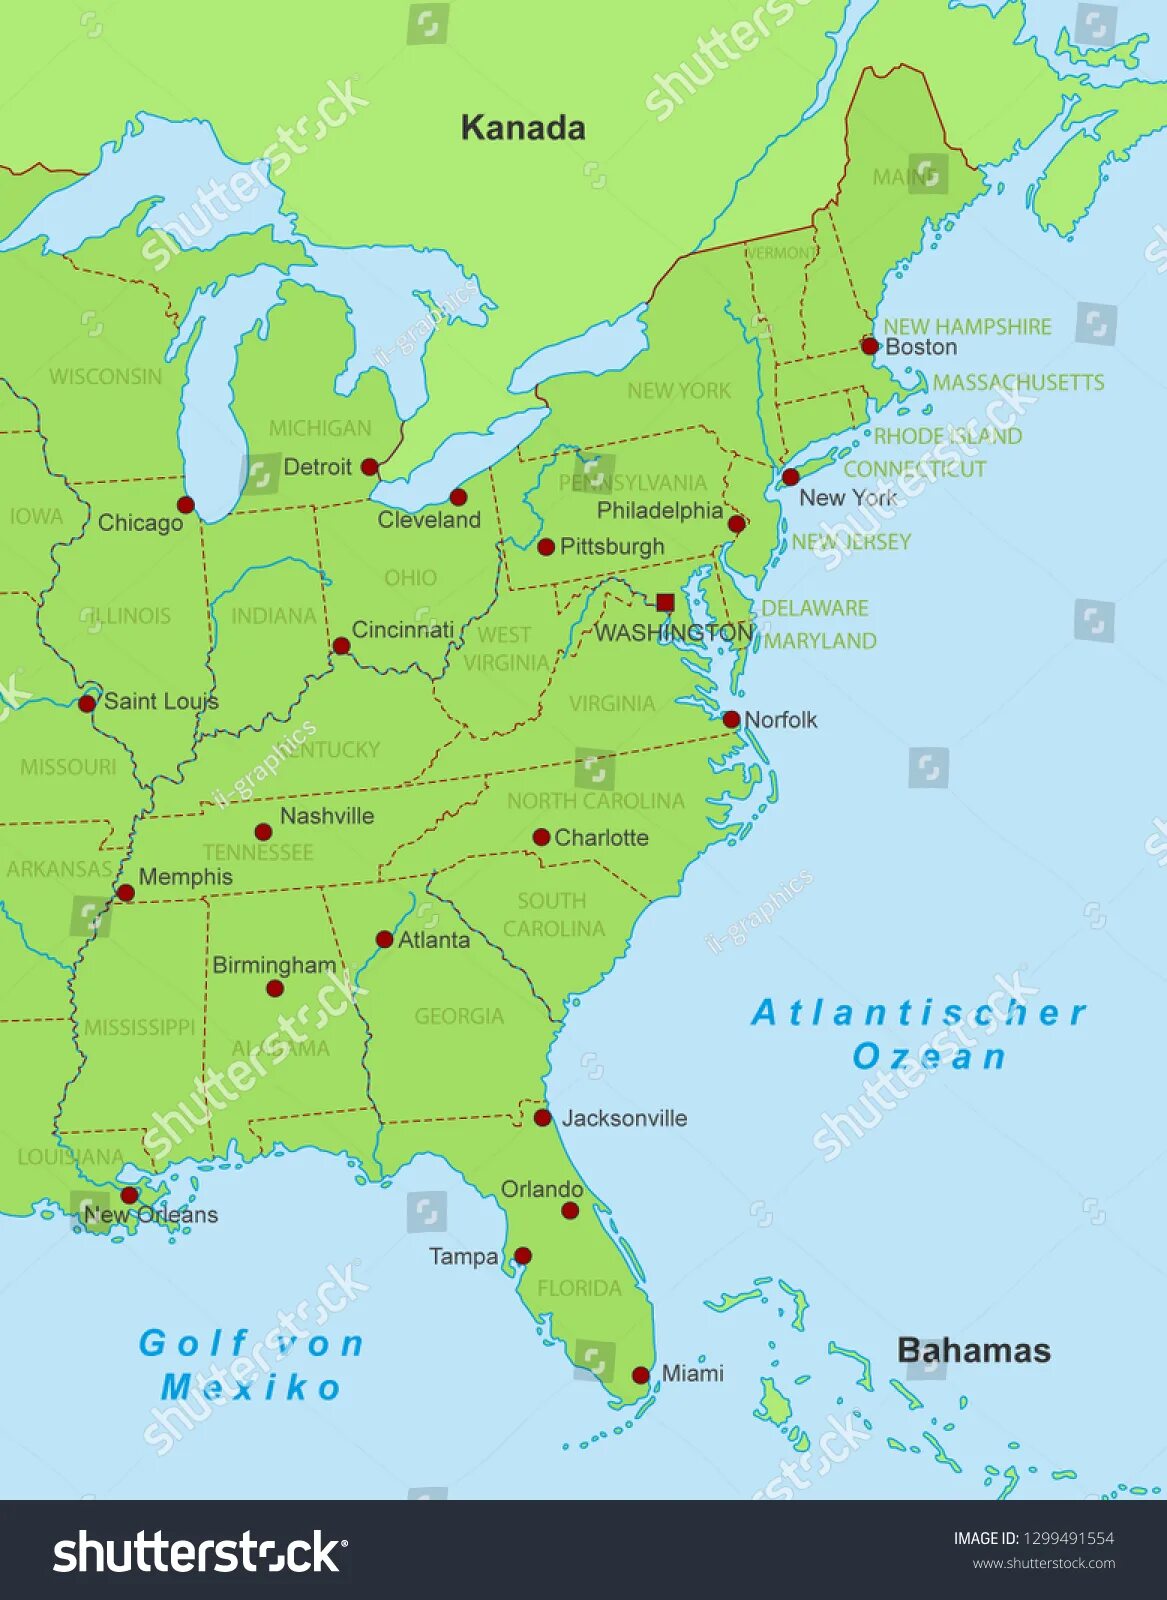 Восточное побережье Америки на карте. Восточное побережье США на карте. Восточного побережья Соединенных Штатов Америки на карте. Карта Штатов восточного побережья США.